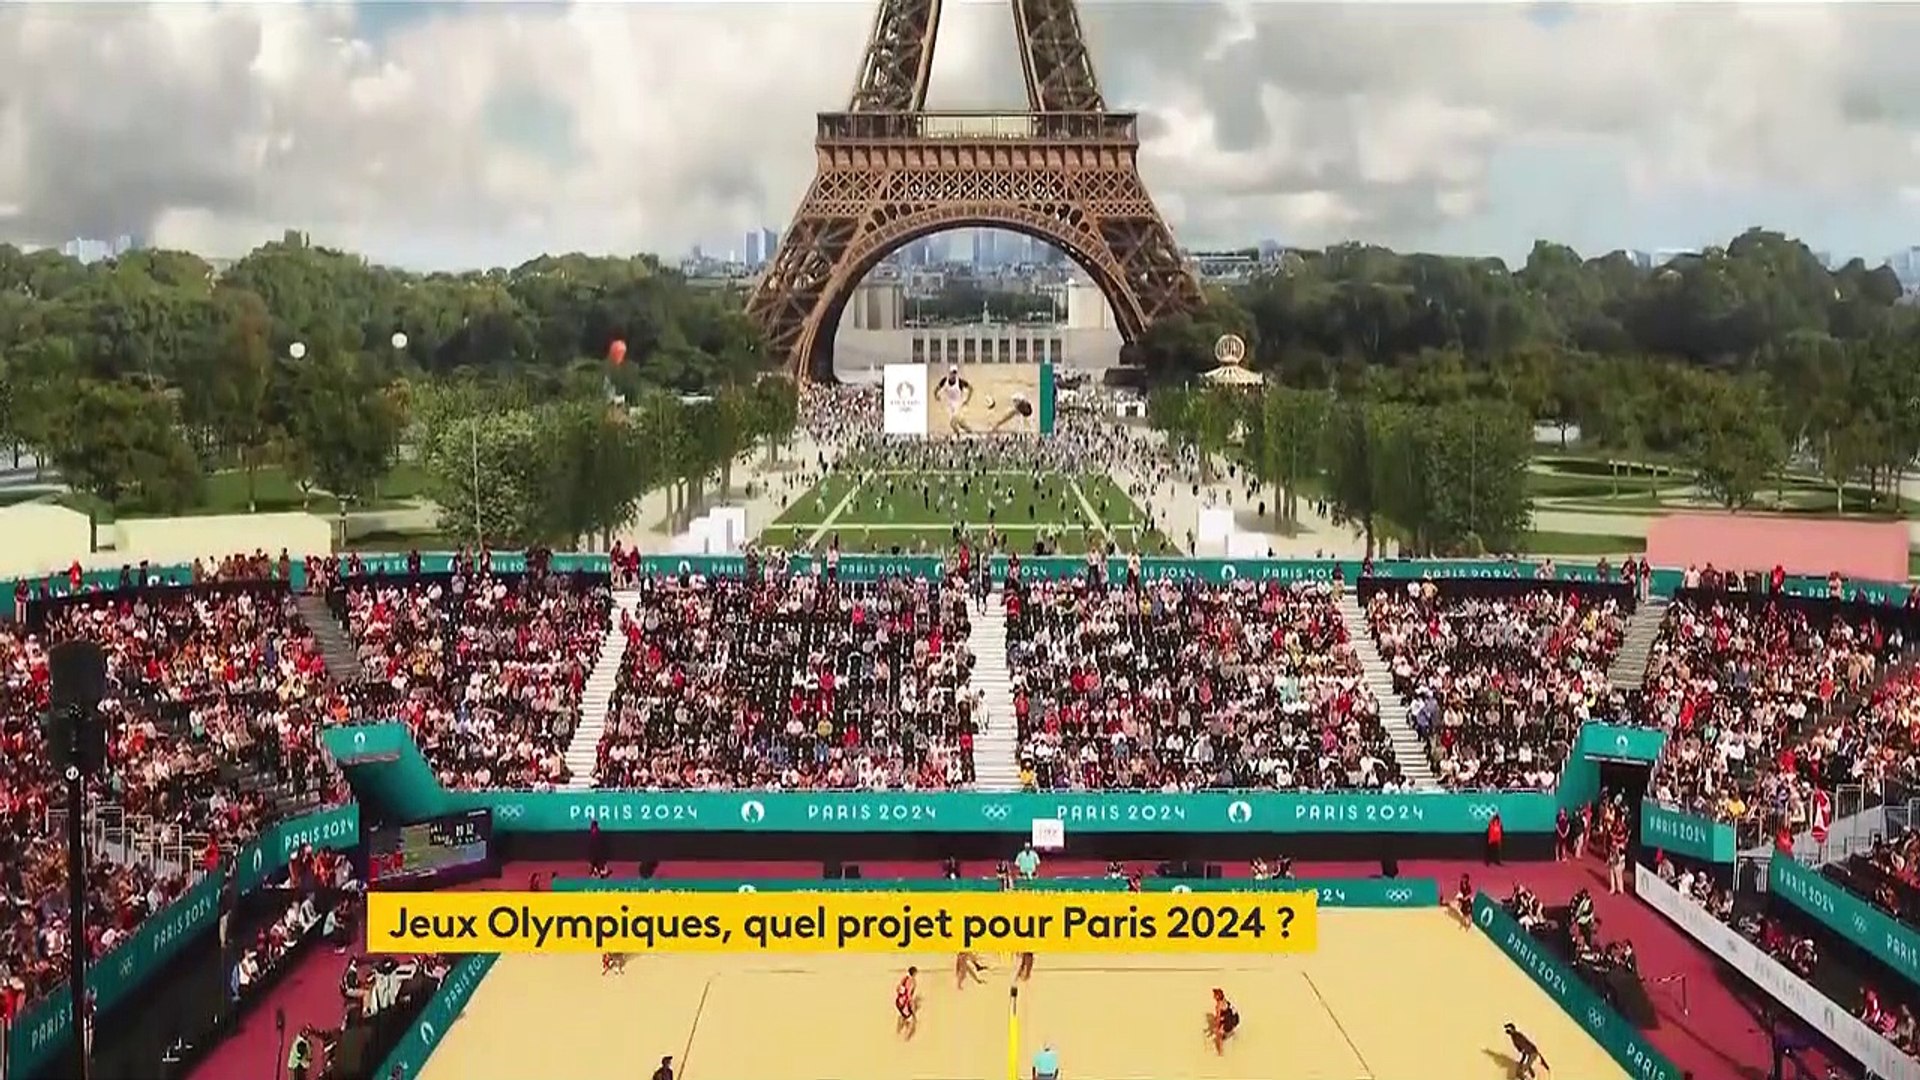 VIDEO - JO de Paris 2024 : ce qu'il faut savoir sur les 3